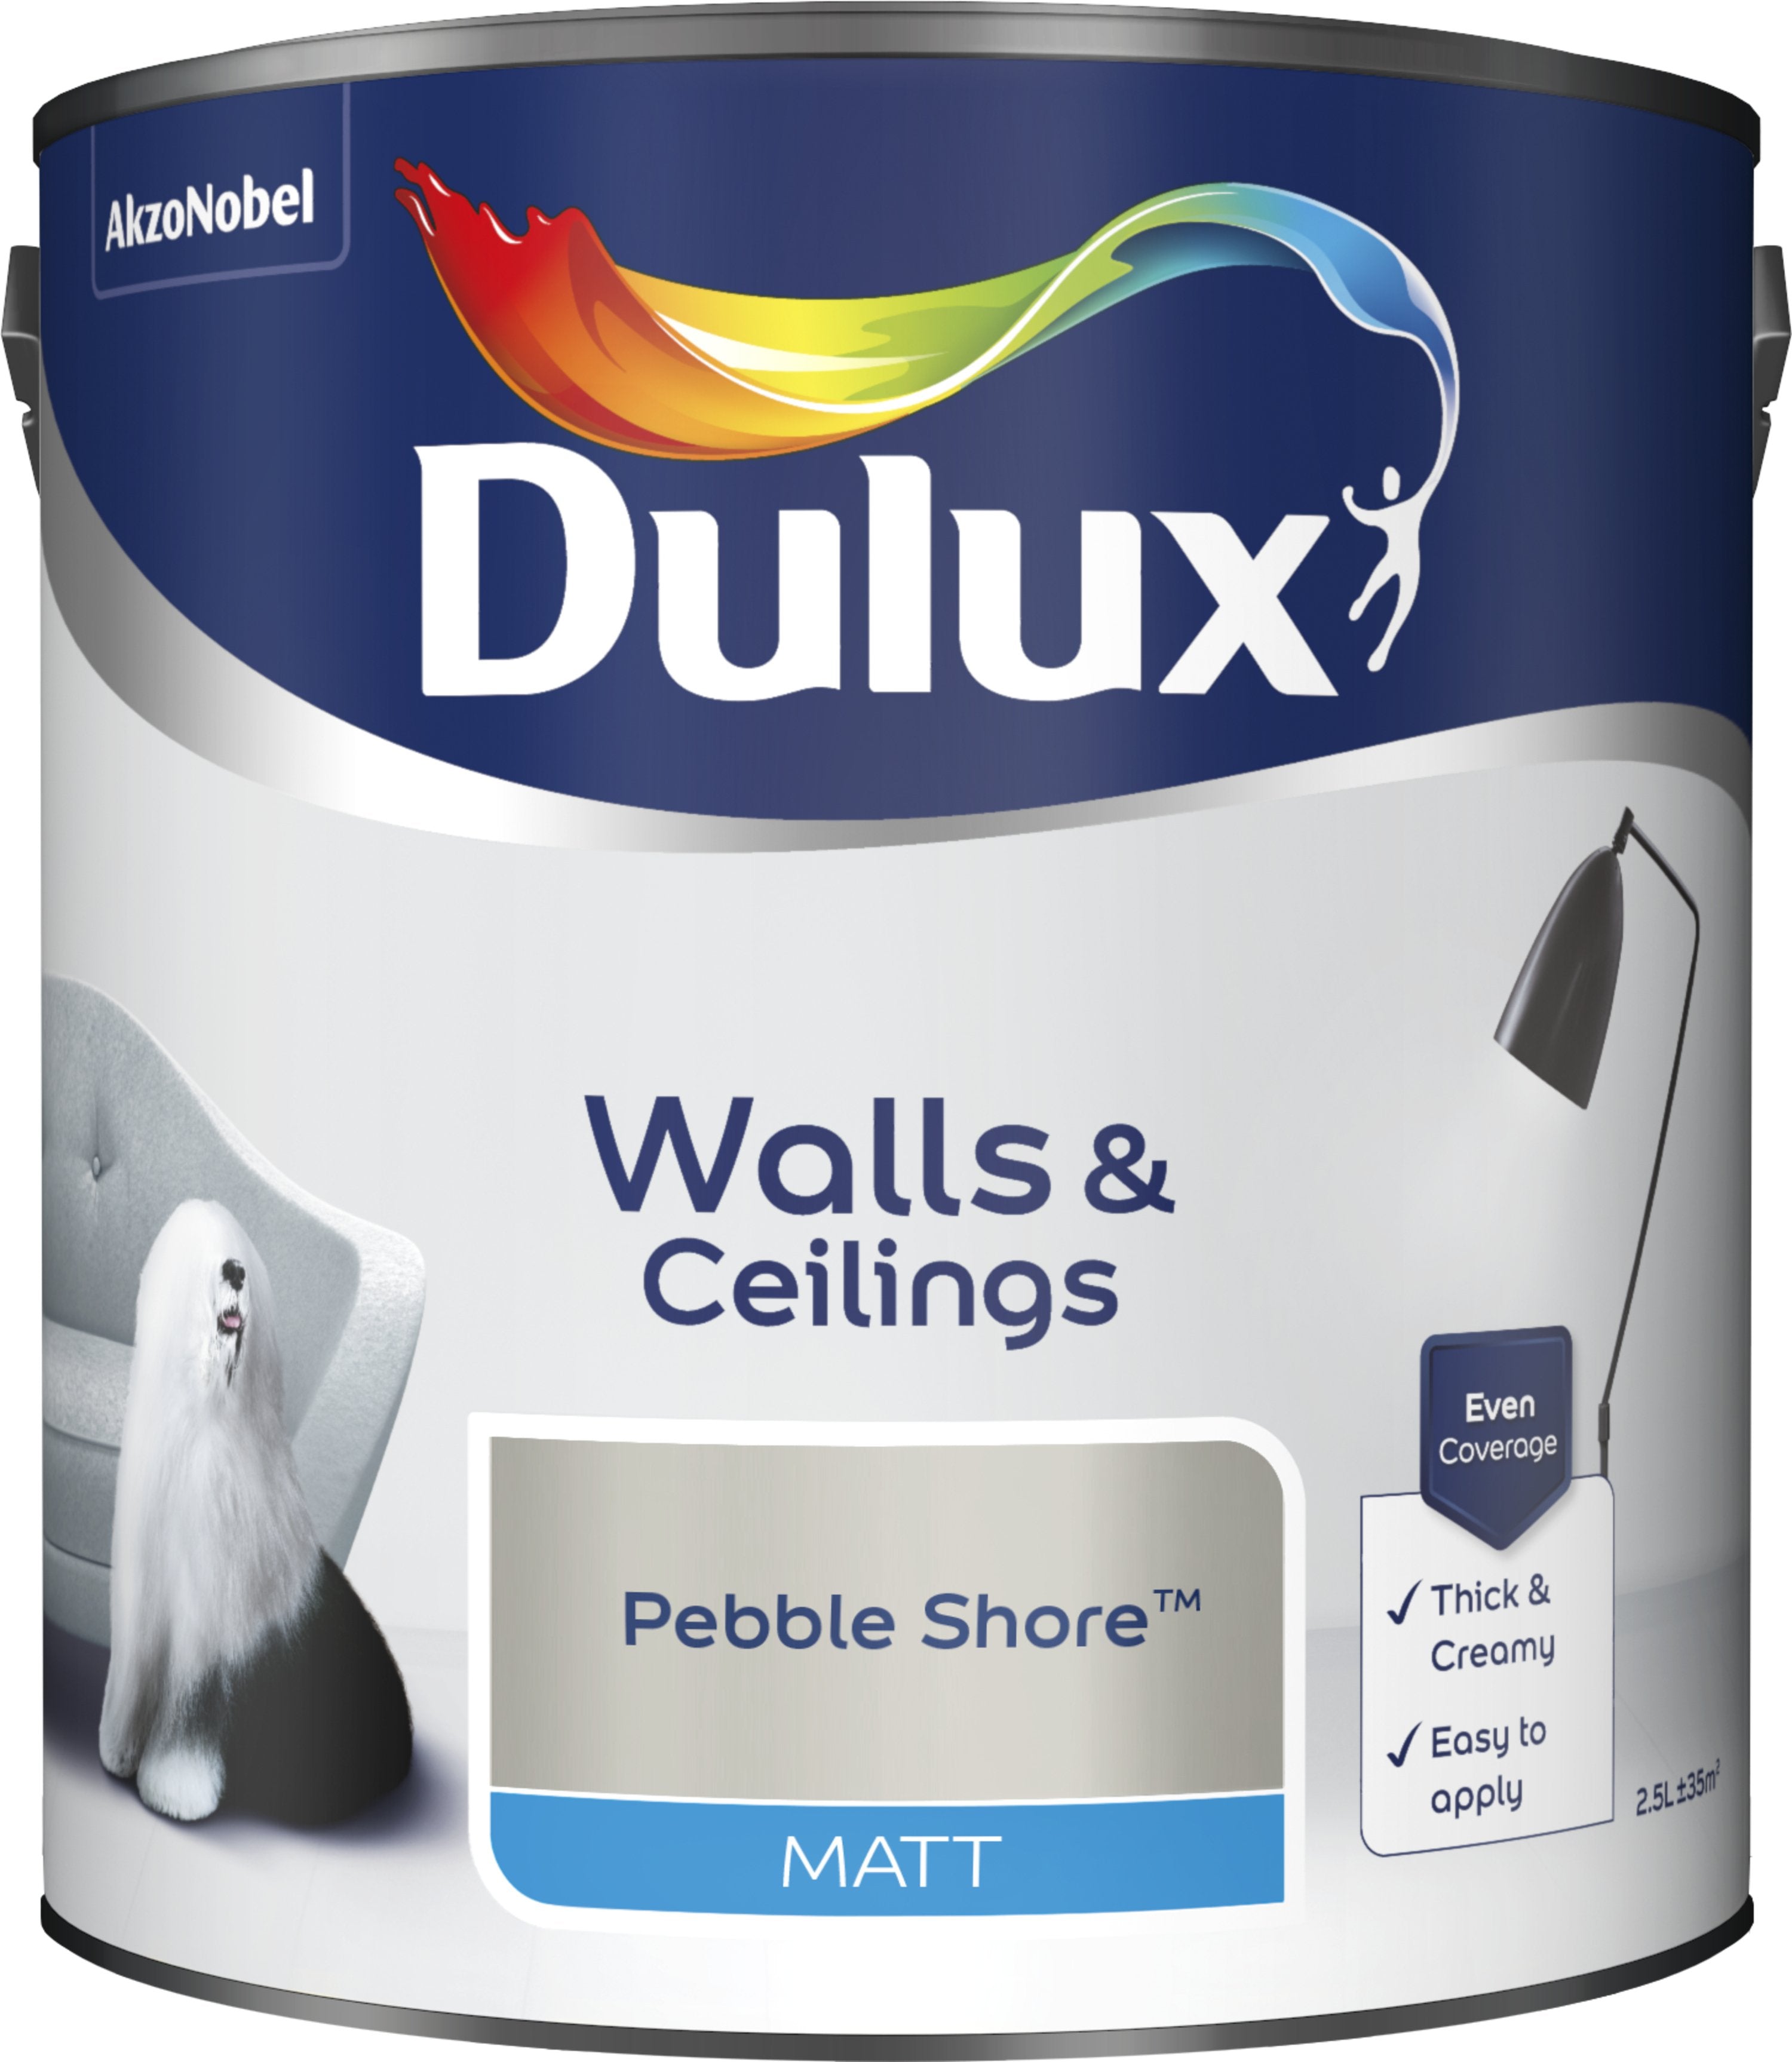 Dulux Matt Emulsion Paint For Walls And Ceilings - Pebble Shore 2.5L Garden & Diy  Home Improvements